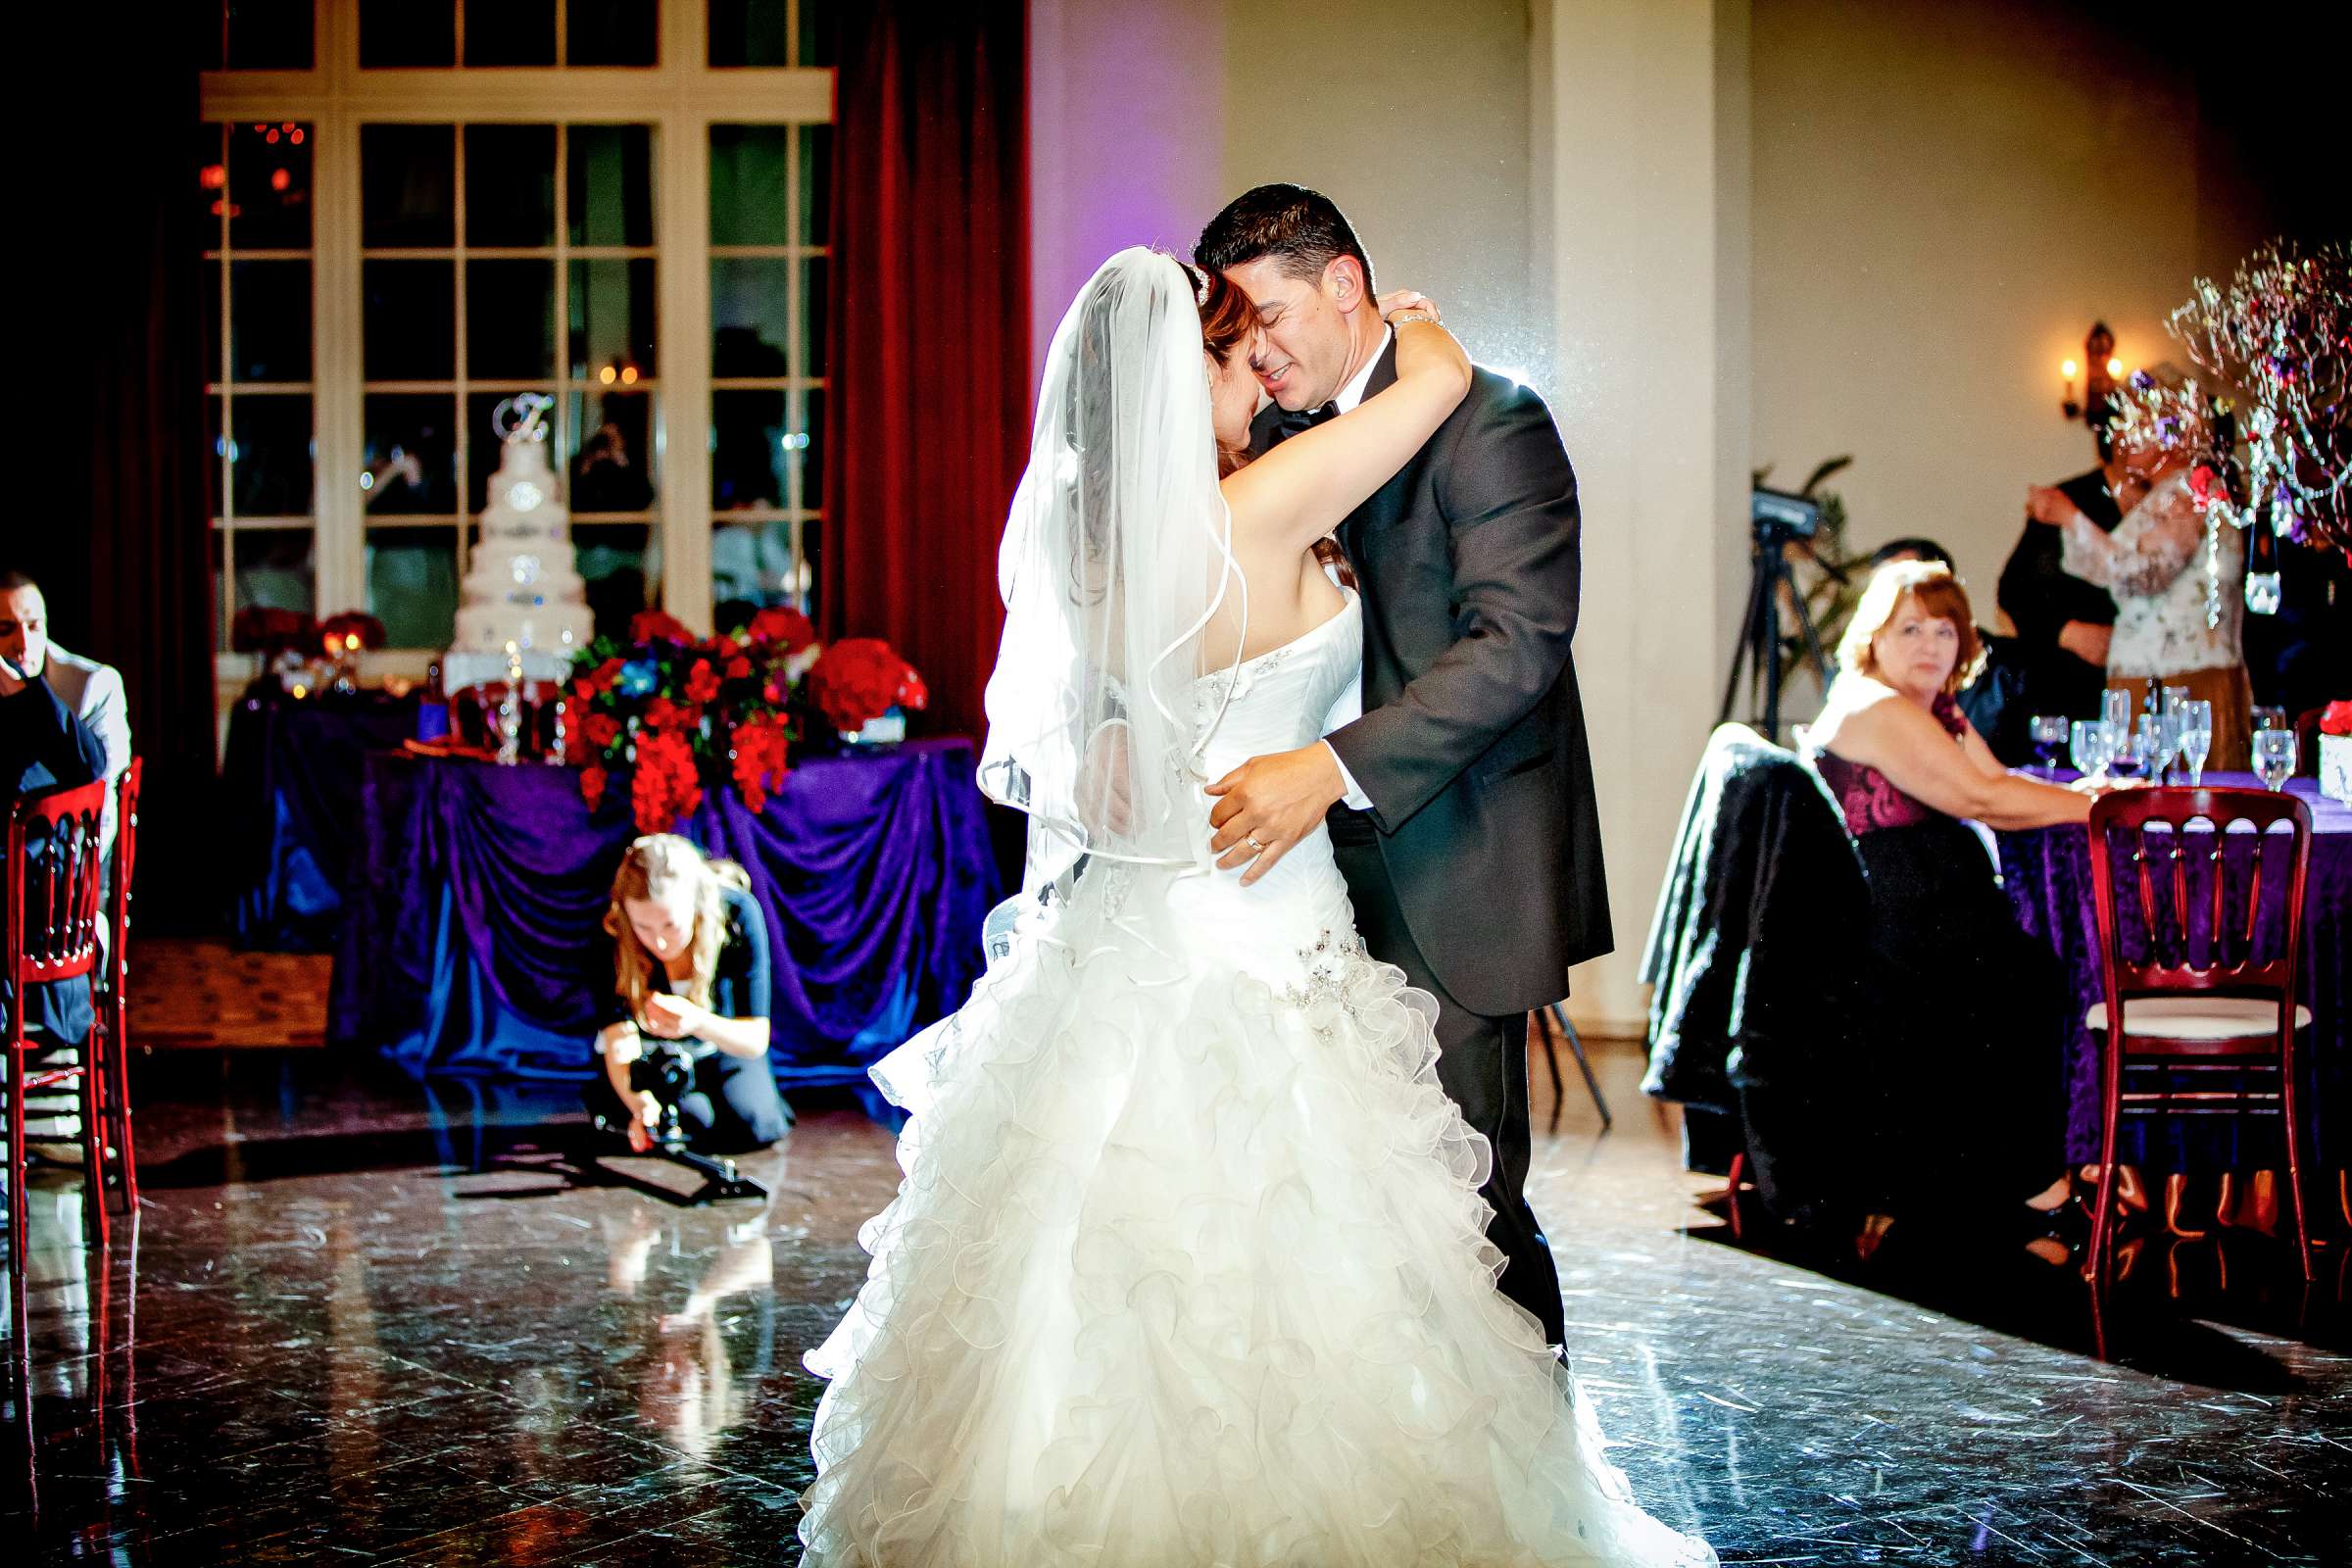 El Cortez Wedding, Mariluz and Luis Wedding Photo #307683 by True Photography